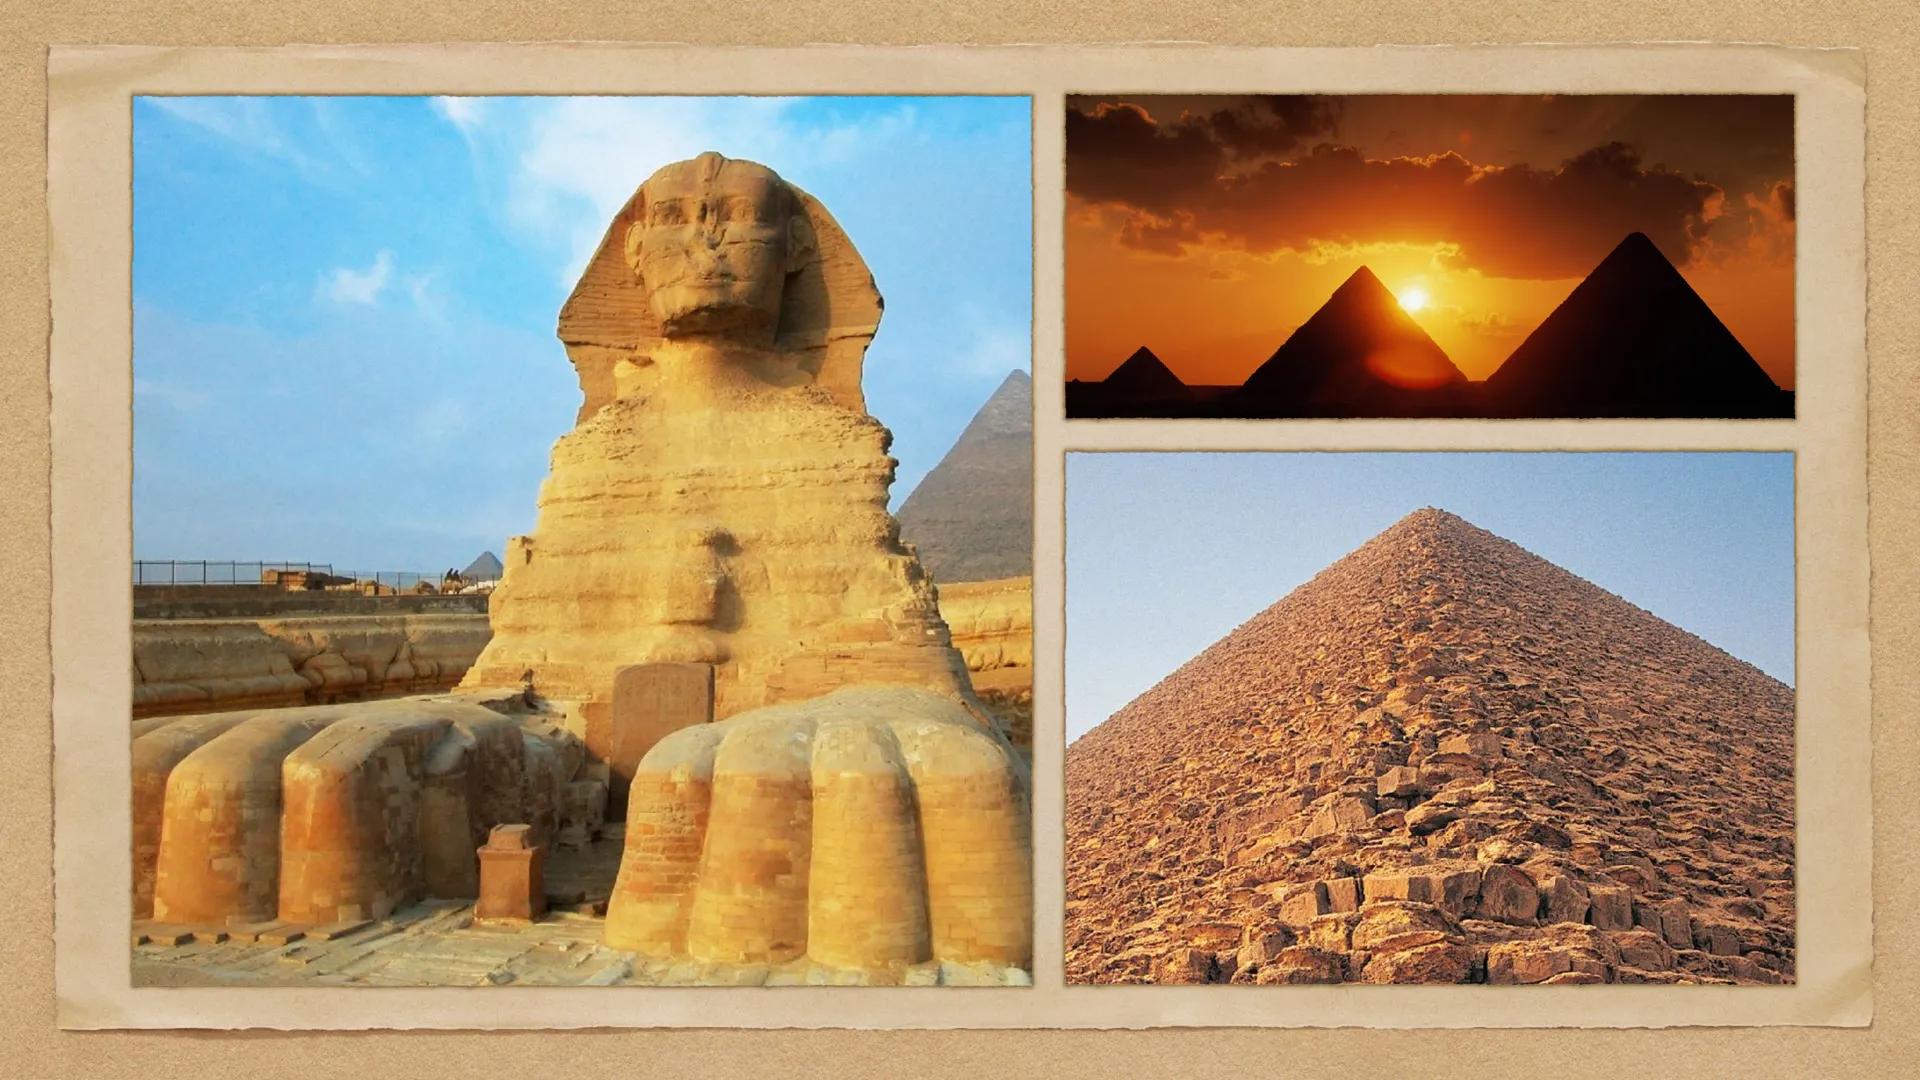 L'Antico Egitto
Egitto: il "dono del Nilo"
3100-1070 a.C. Il Nilo
Mediterranean Sea
EGYPT
SUDAN
SOUTH
SUDAN
ләмгы дүү
nine Nile R
UGANDA
Red